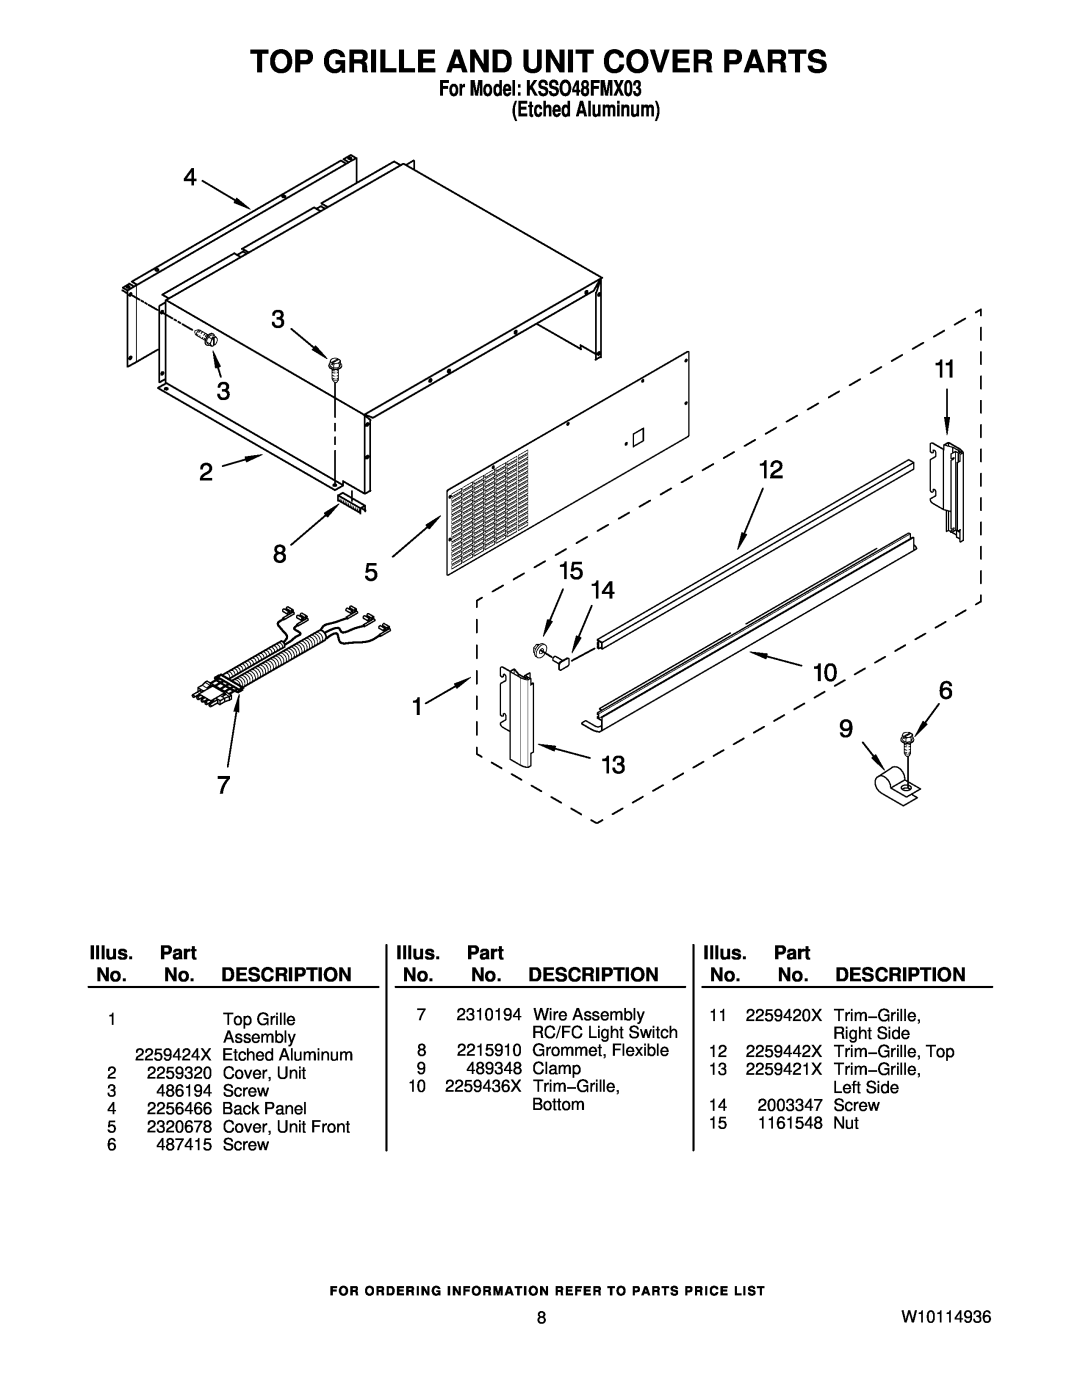 KitchenAid manual Top Grille And Unit Cover Parts, For Model KSSO48FMX03 Etched Aluminum, Illus, Description 